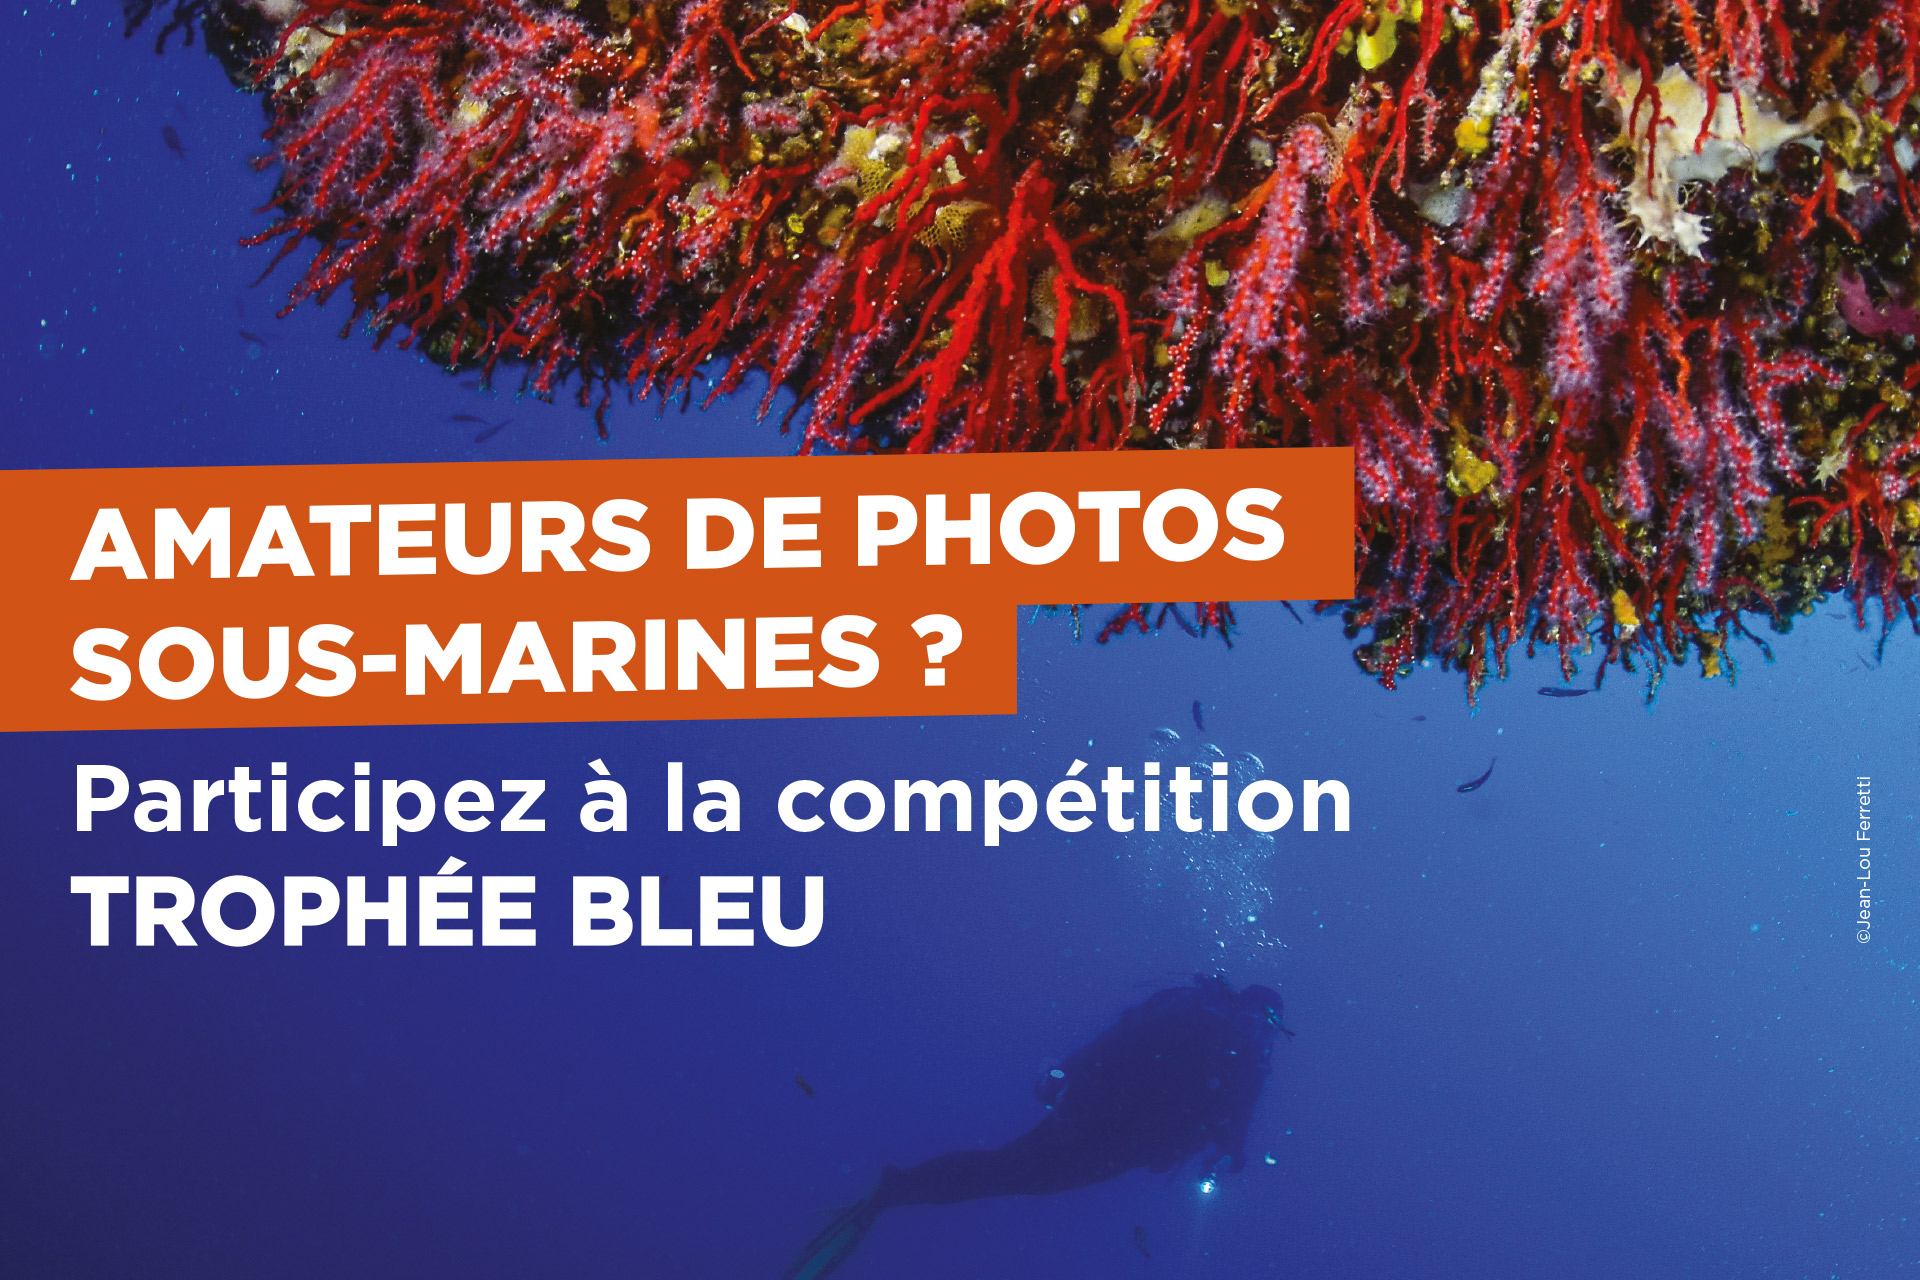 Amateurs de photos sous-marines ? Participez à la compétition 'Trophée bleu' ! (1/1)